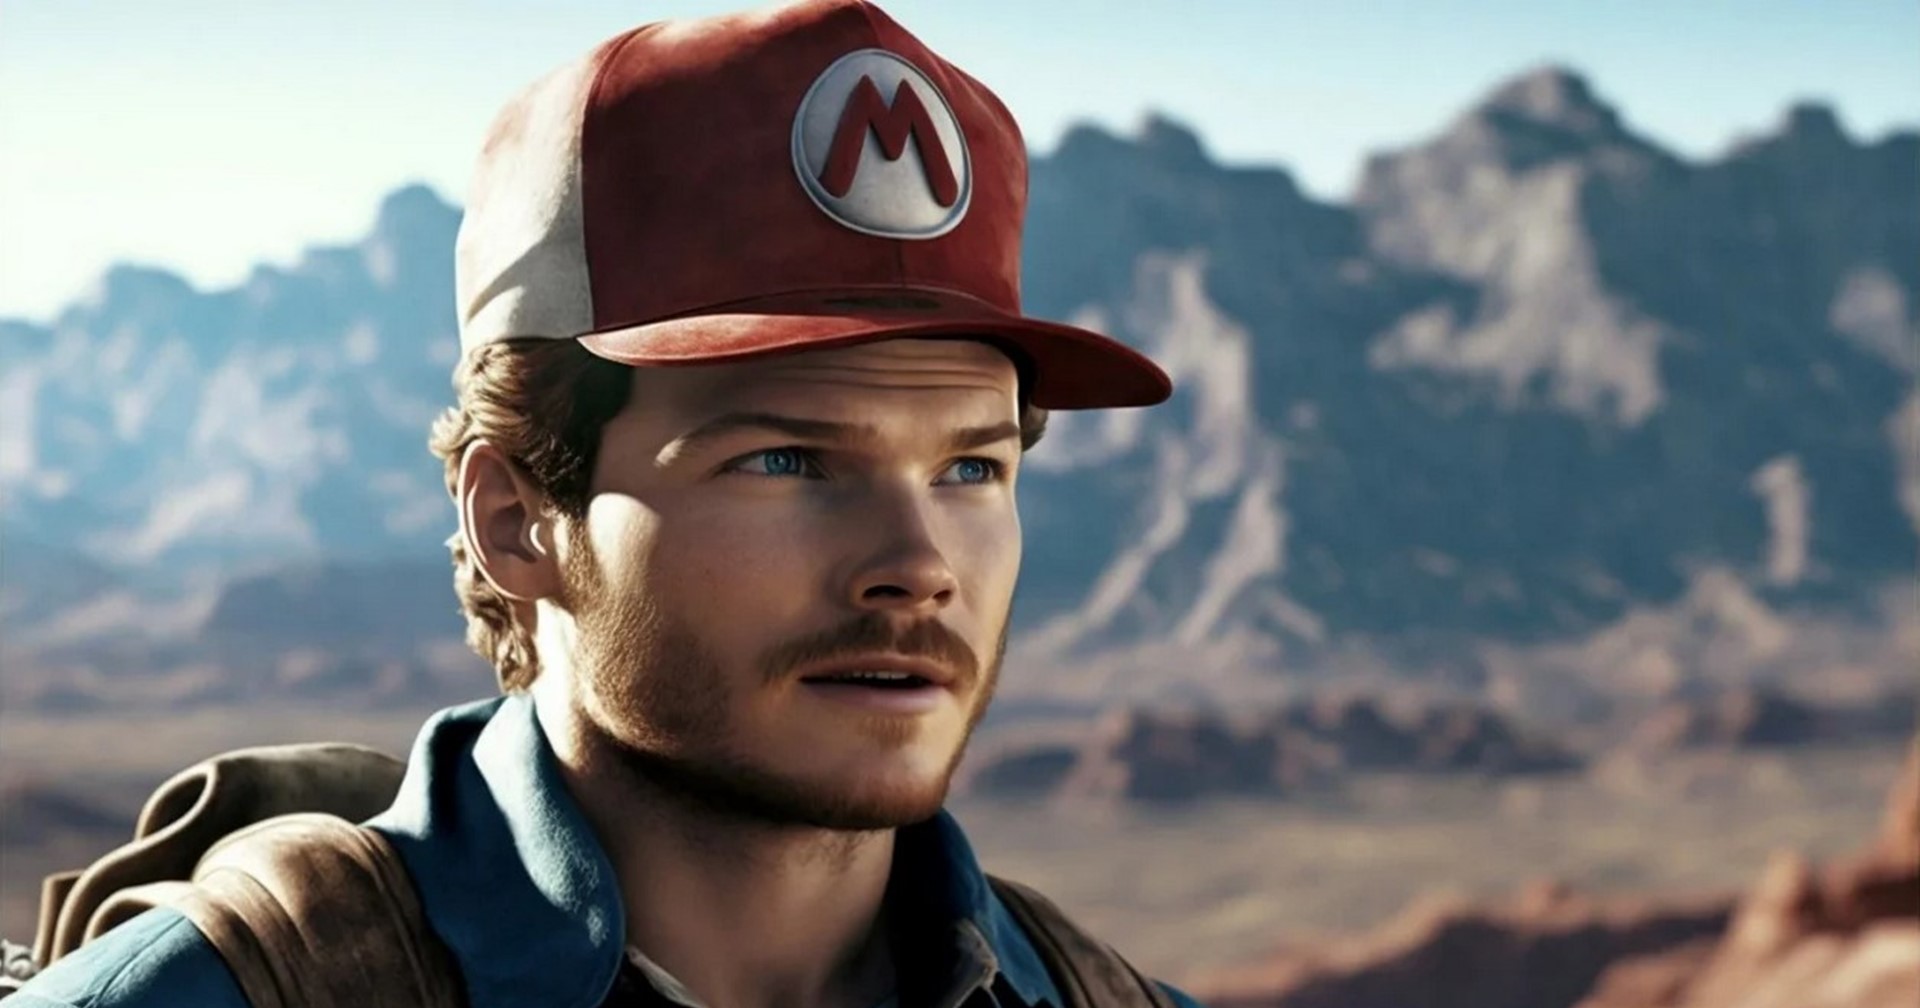 ชมภาพตัวละครในหนัง Super Mario ที่สร้างโดย AI